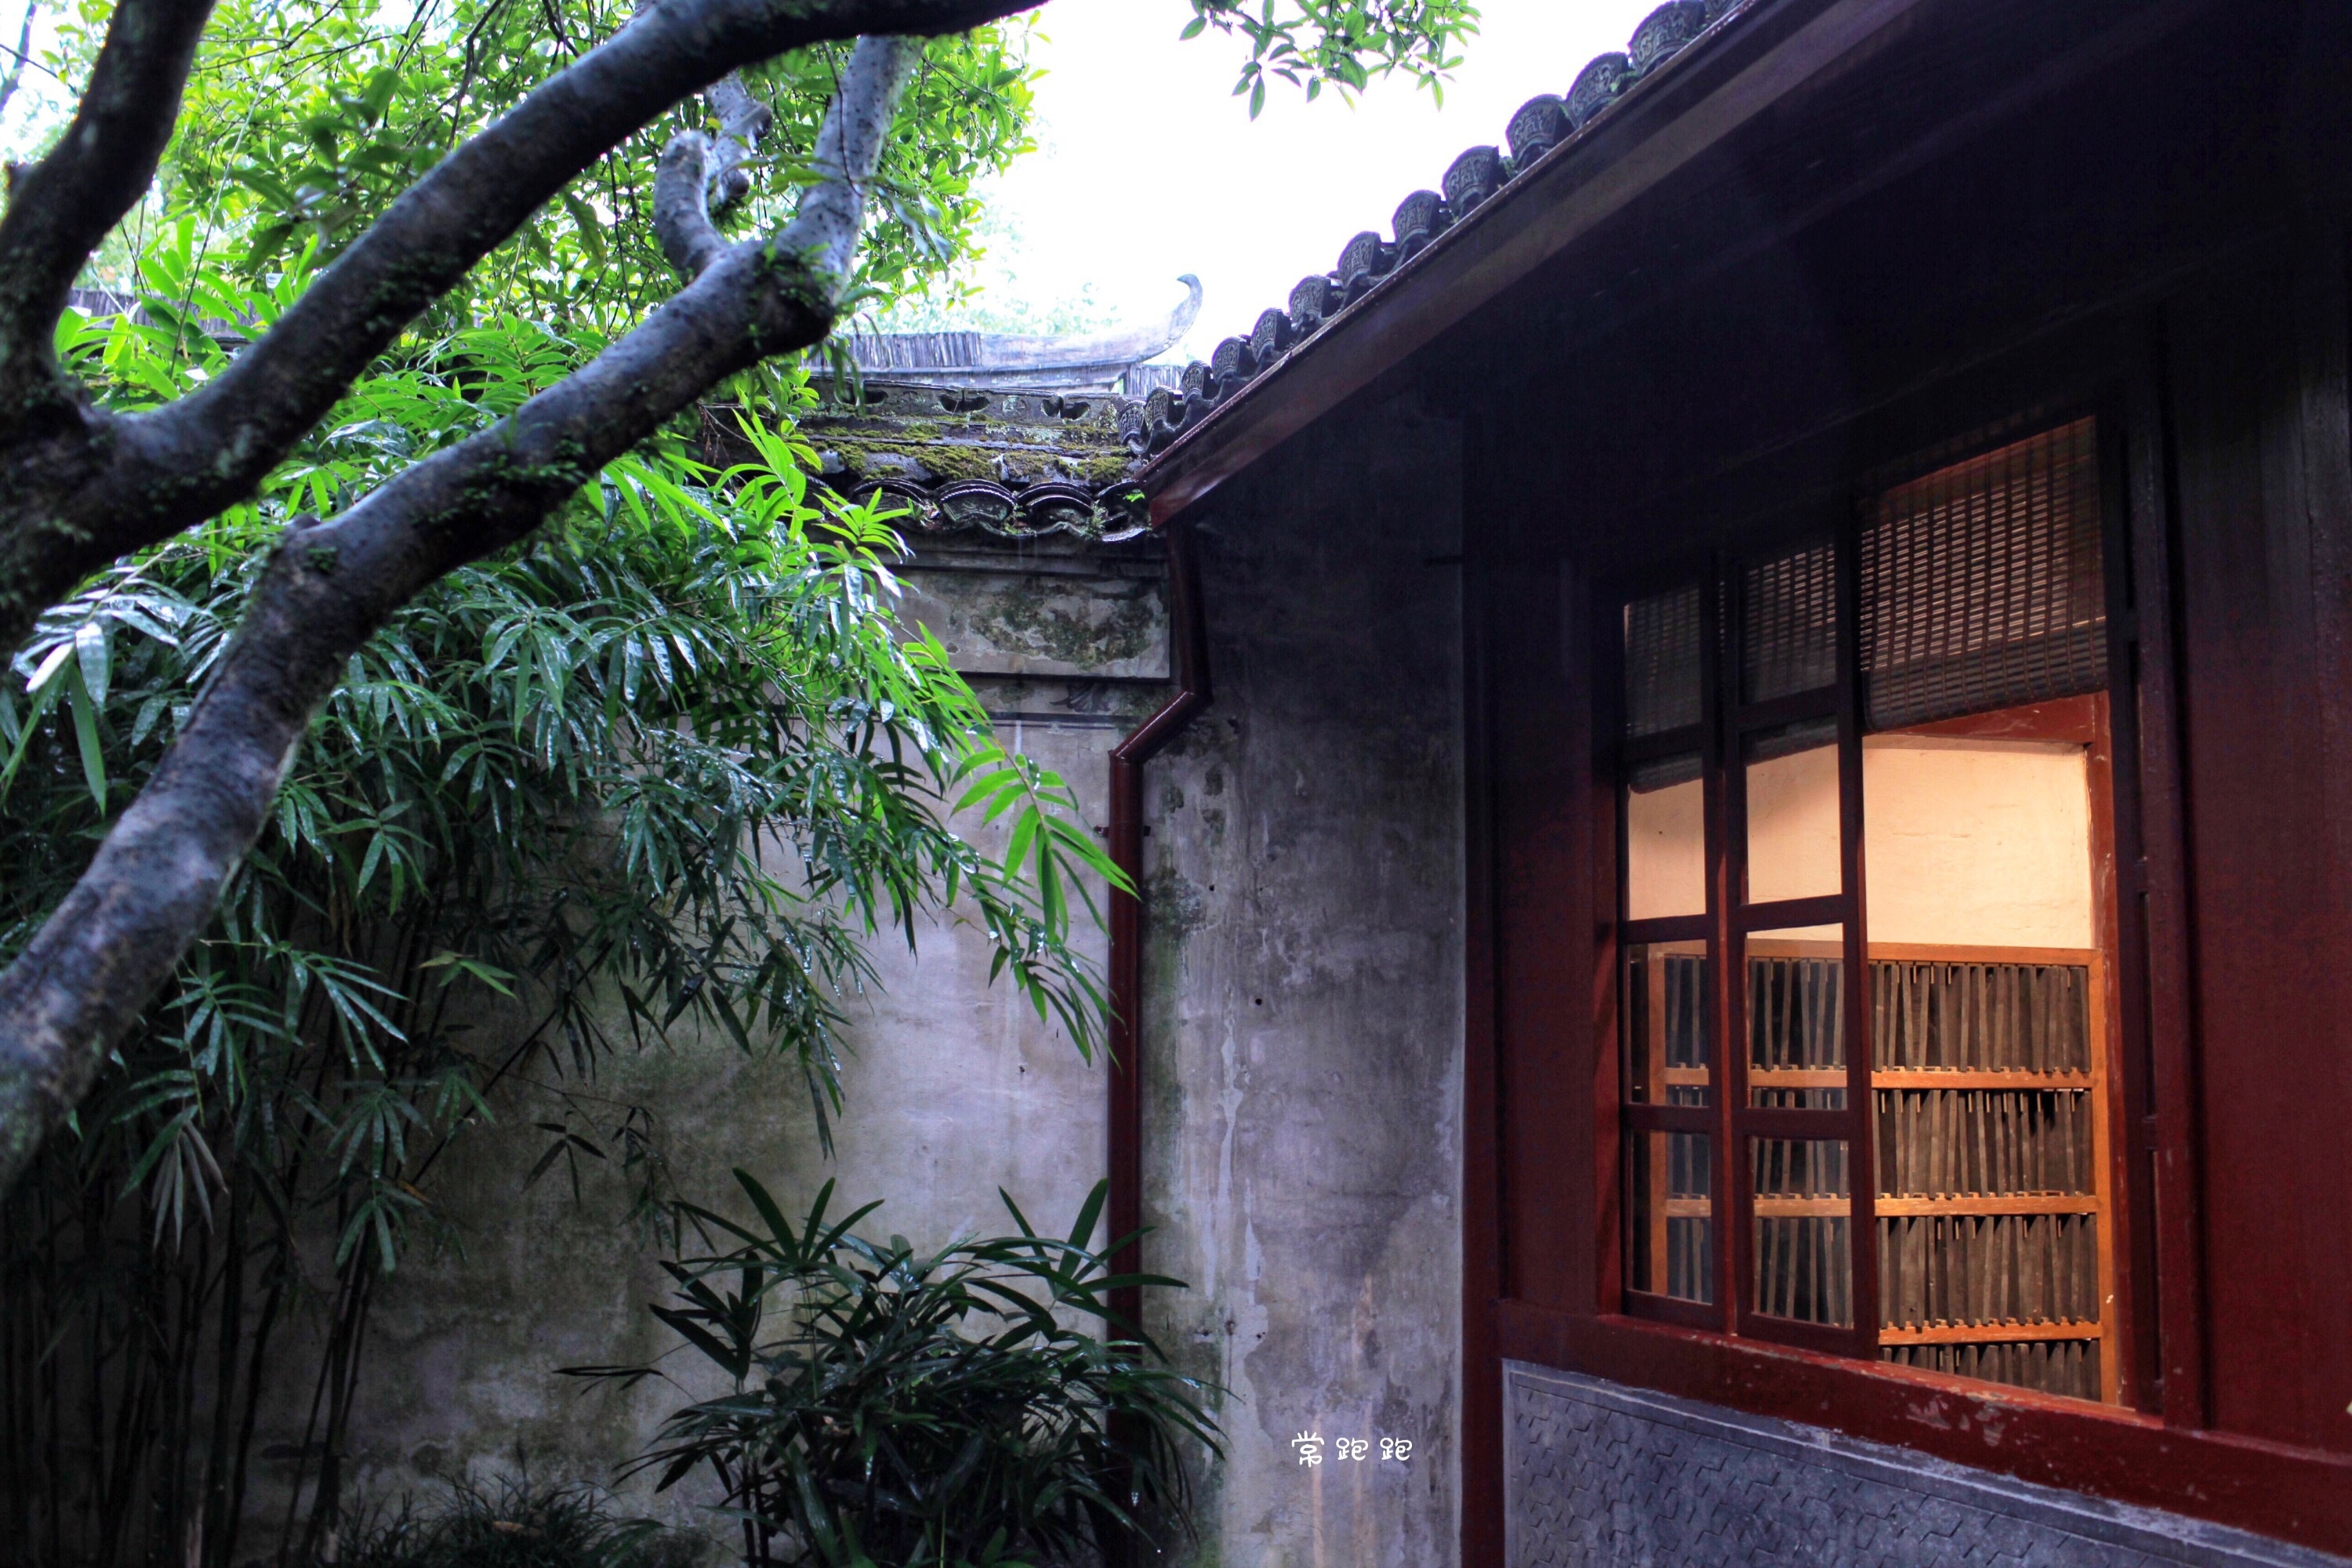 中国现存最早私家藏书楼天一阁 不仅有藏书 还有园林